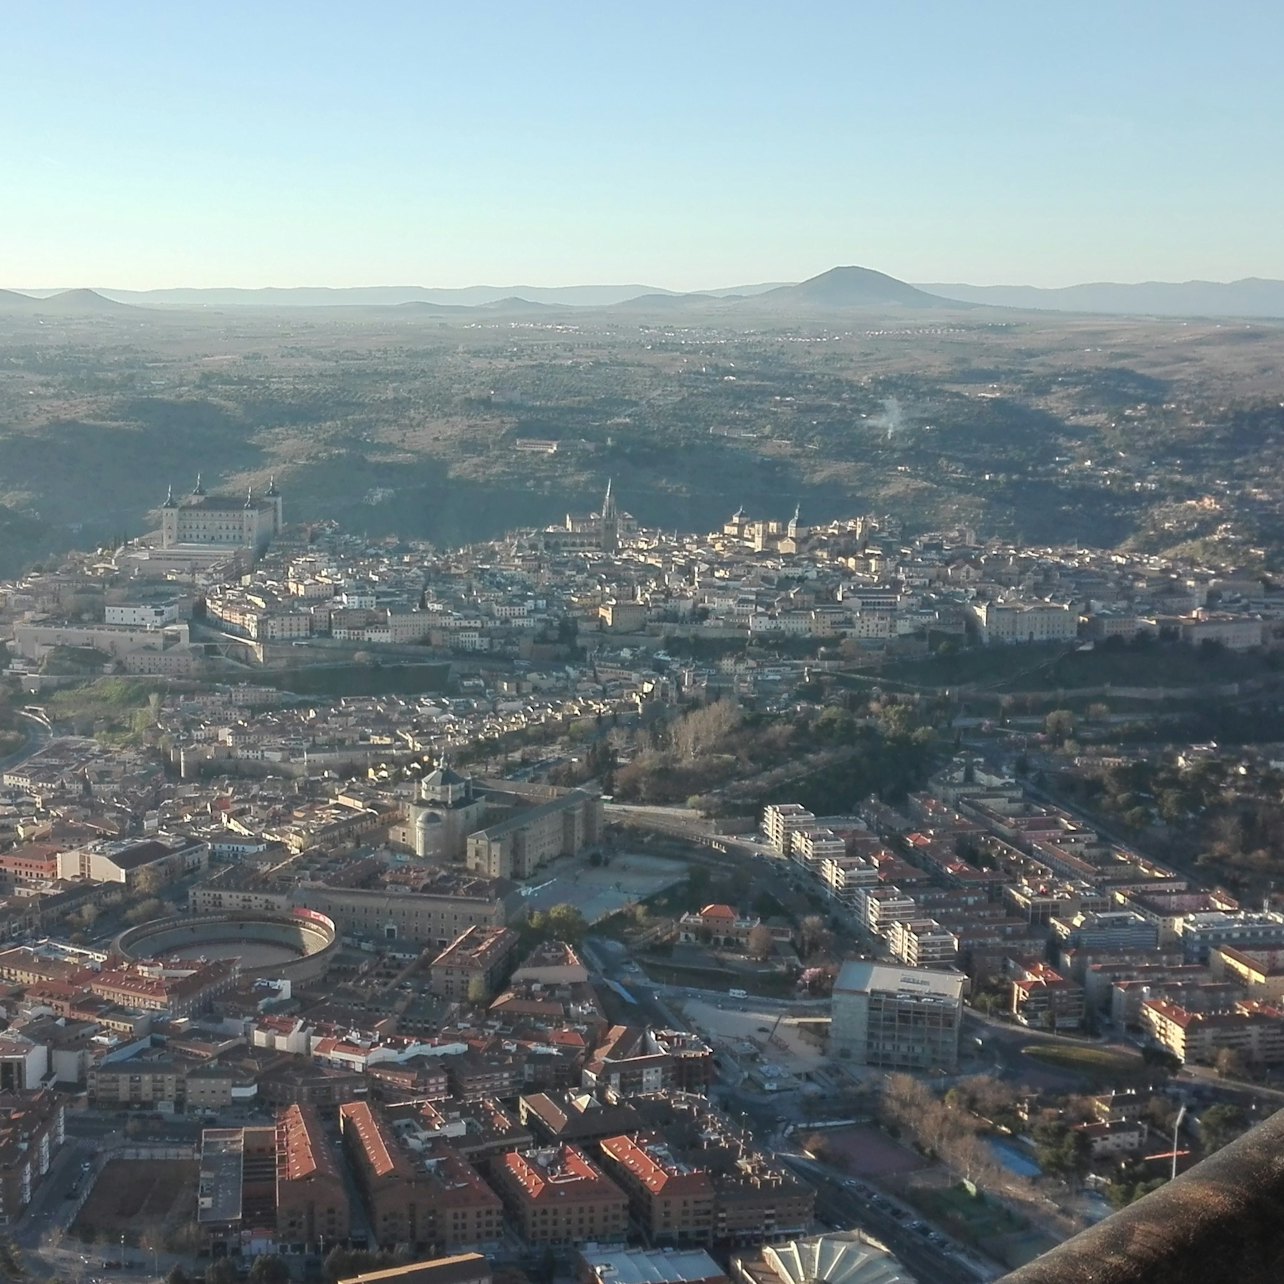 Toledo: Vôo de Balão de Ar Quente com café da manhã e Cava - Acomodações em Toledo